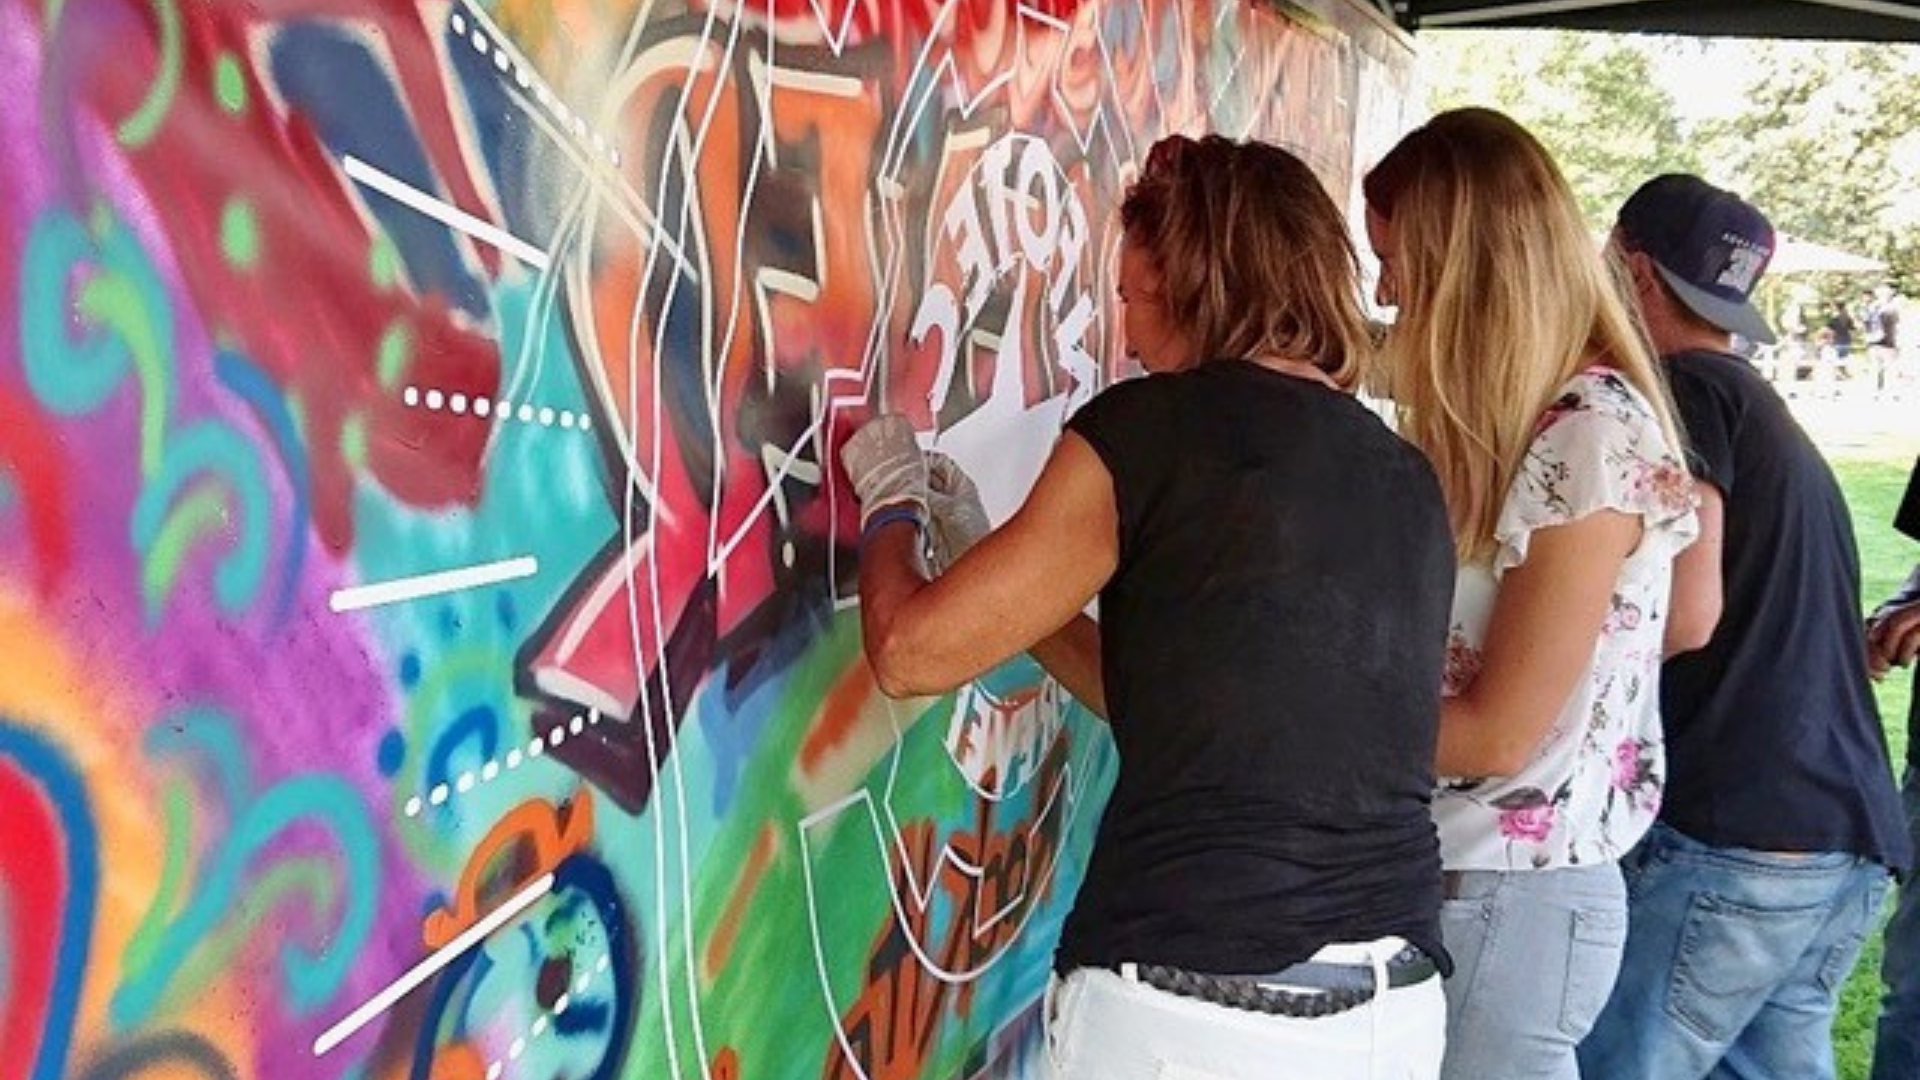  Mur de graffiti peint par des femmes lors d'un atelier